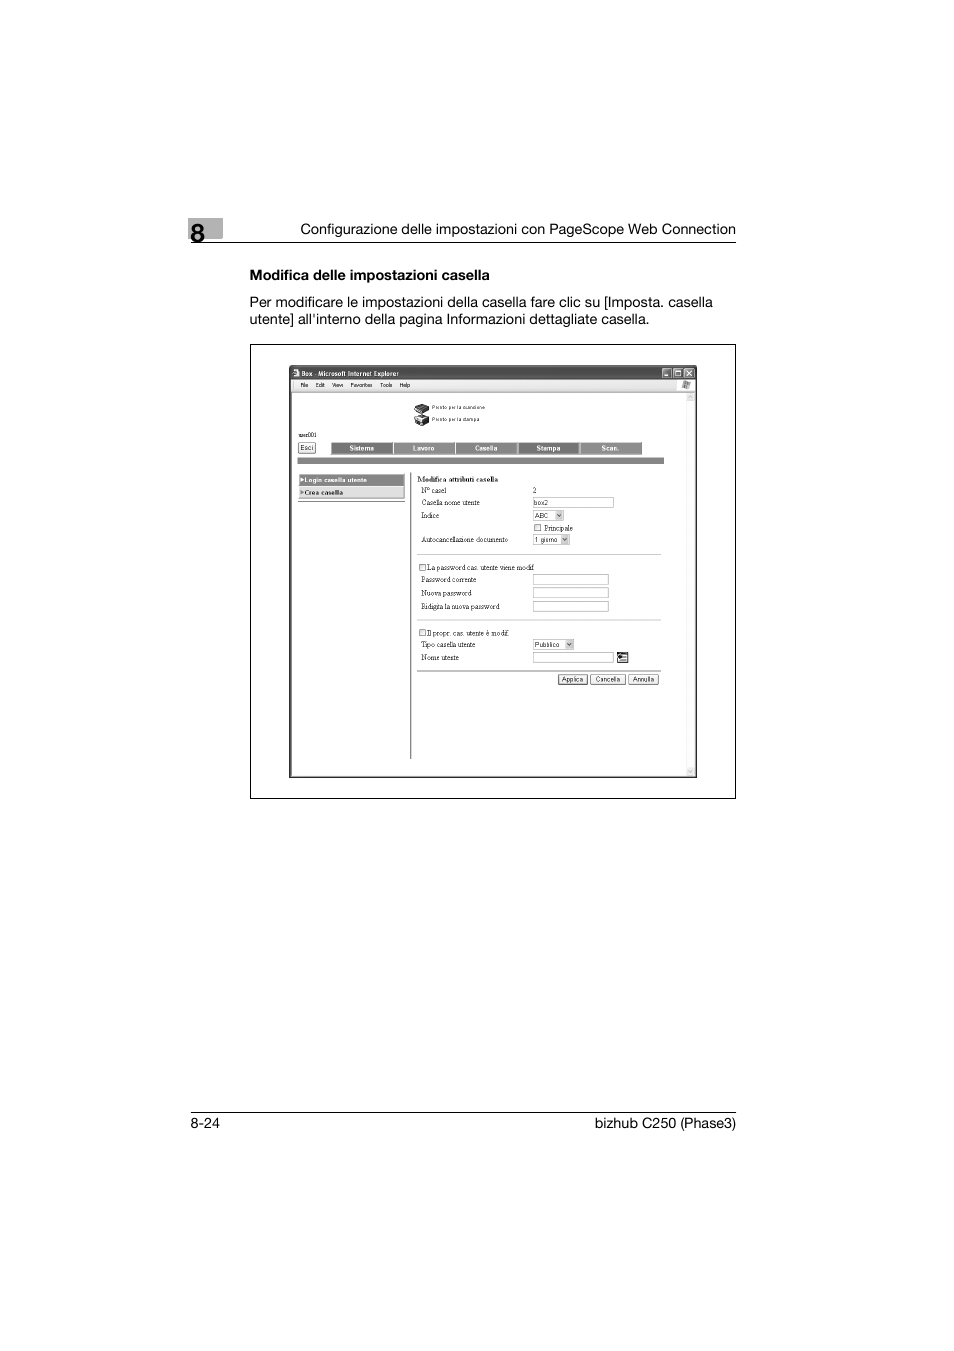 Modifica delle impostazioni casella, Modifica delle impostazioni casella -24 | Konica Minolta bizhub C250 Manuale d'uso | Pagina 220 / 246